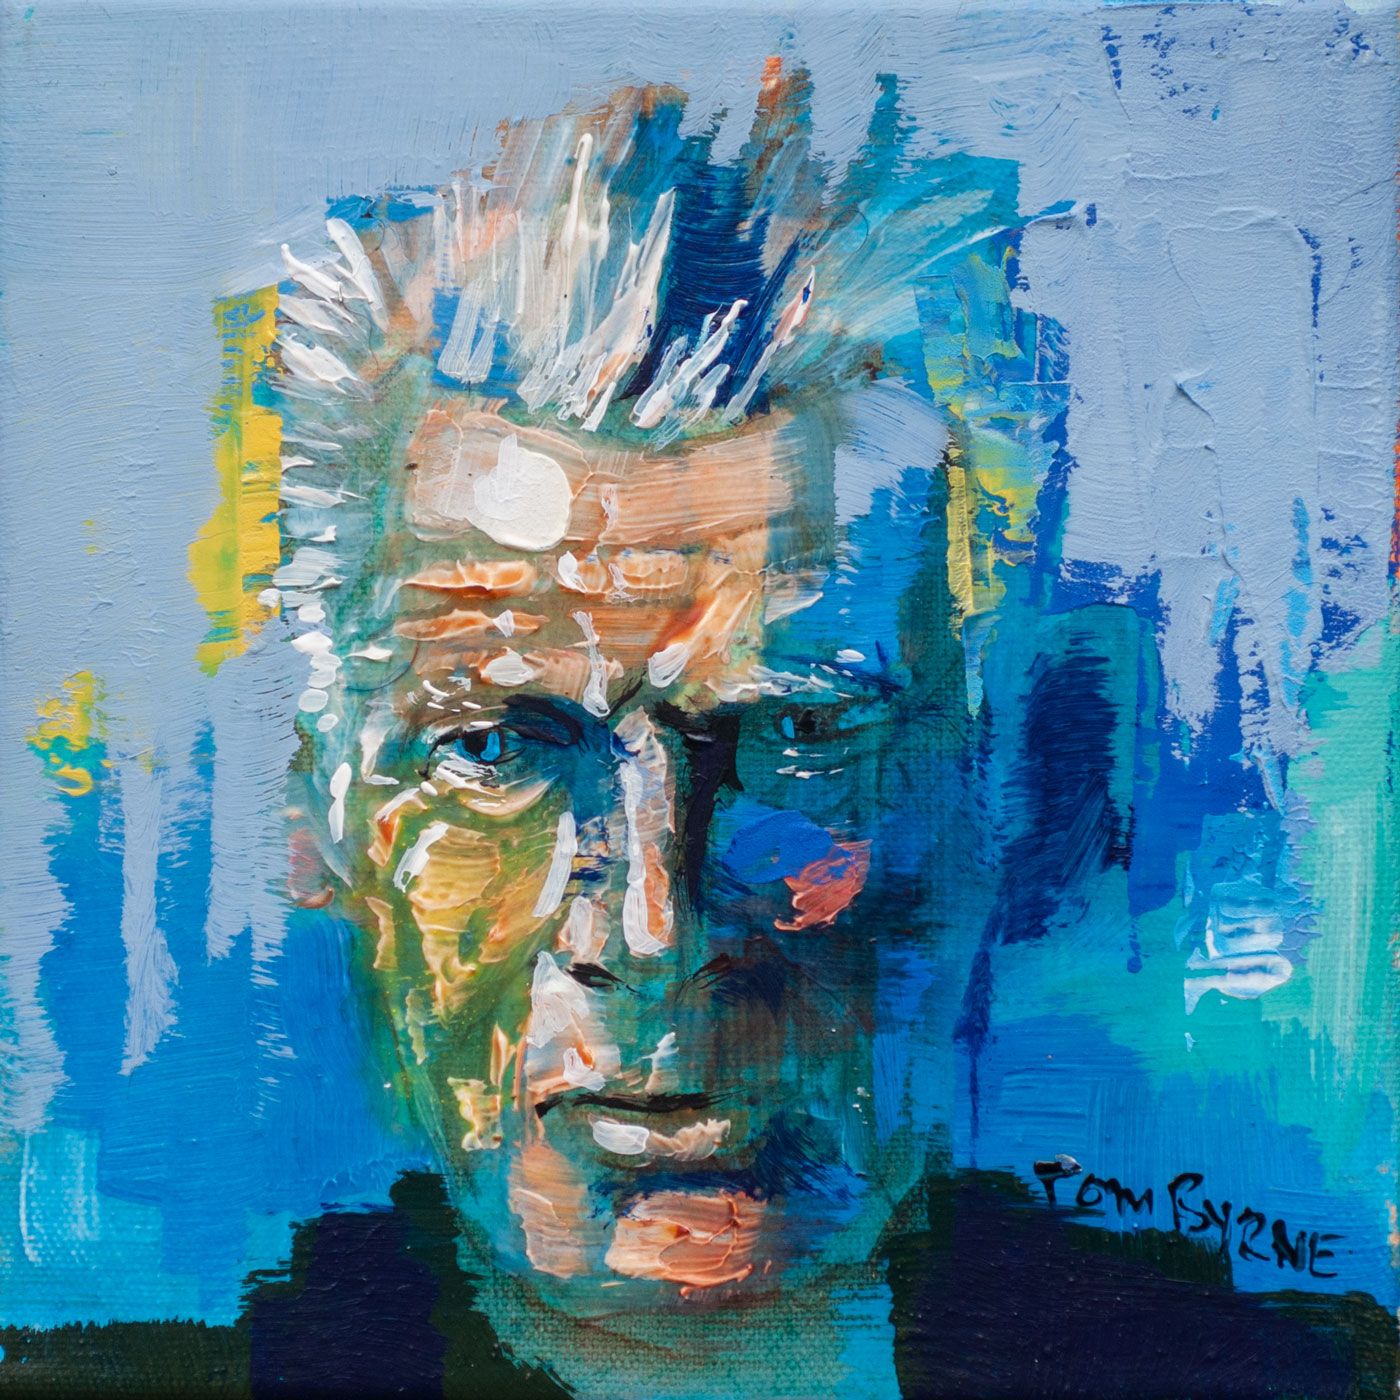 Samuel Beckett in Blue by Tom Byrne